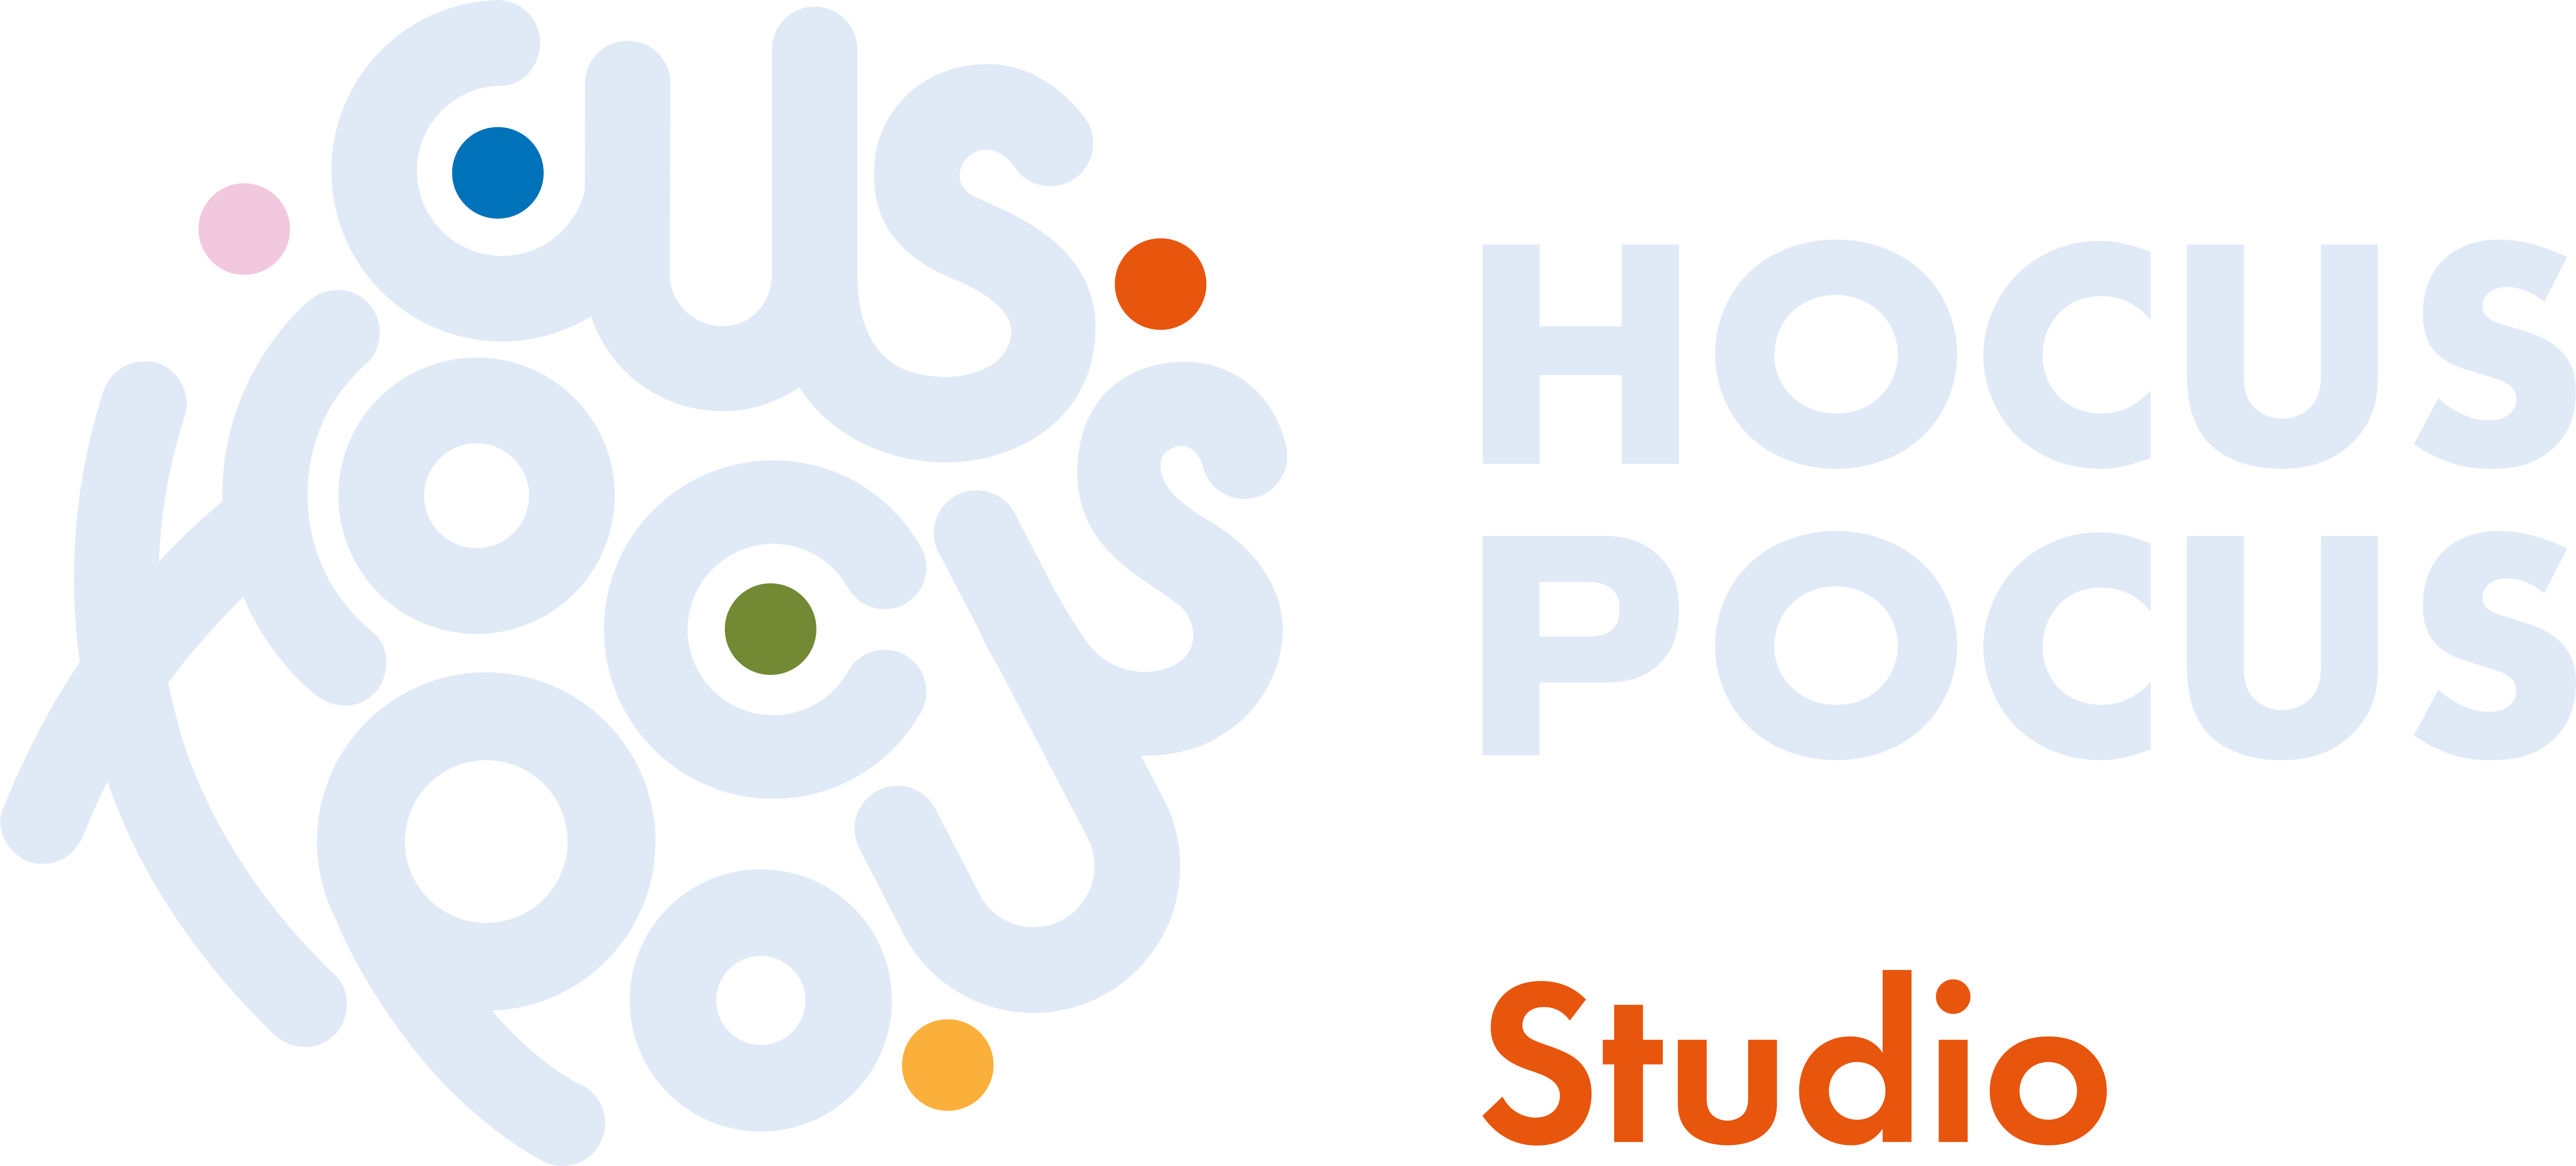 Hocus Pocus Studio Logo